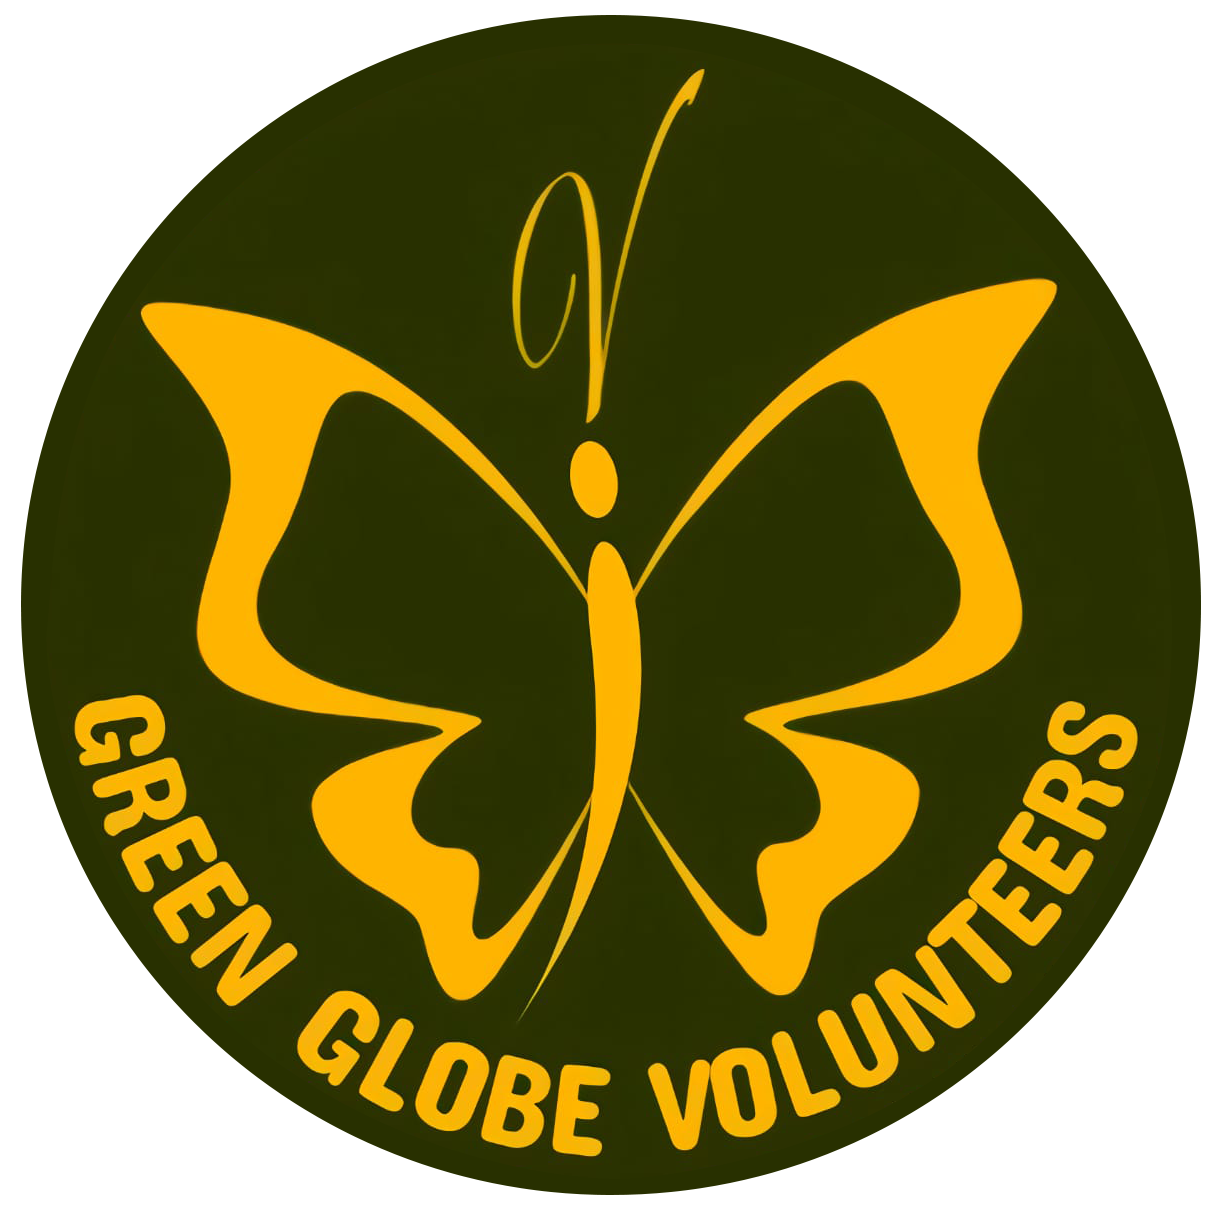 Green Globe Volunteers